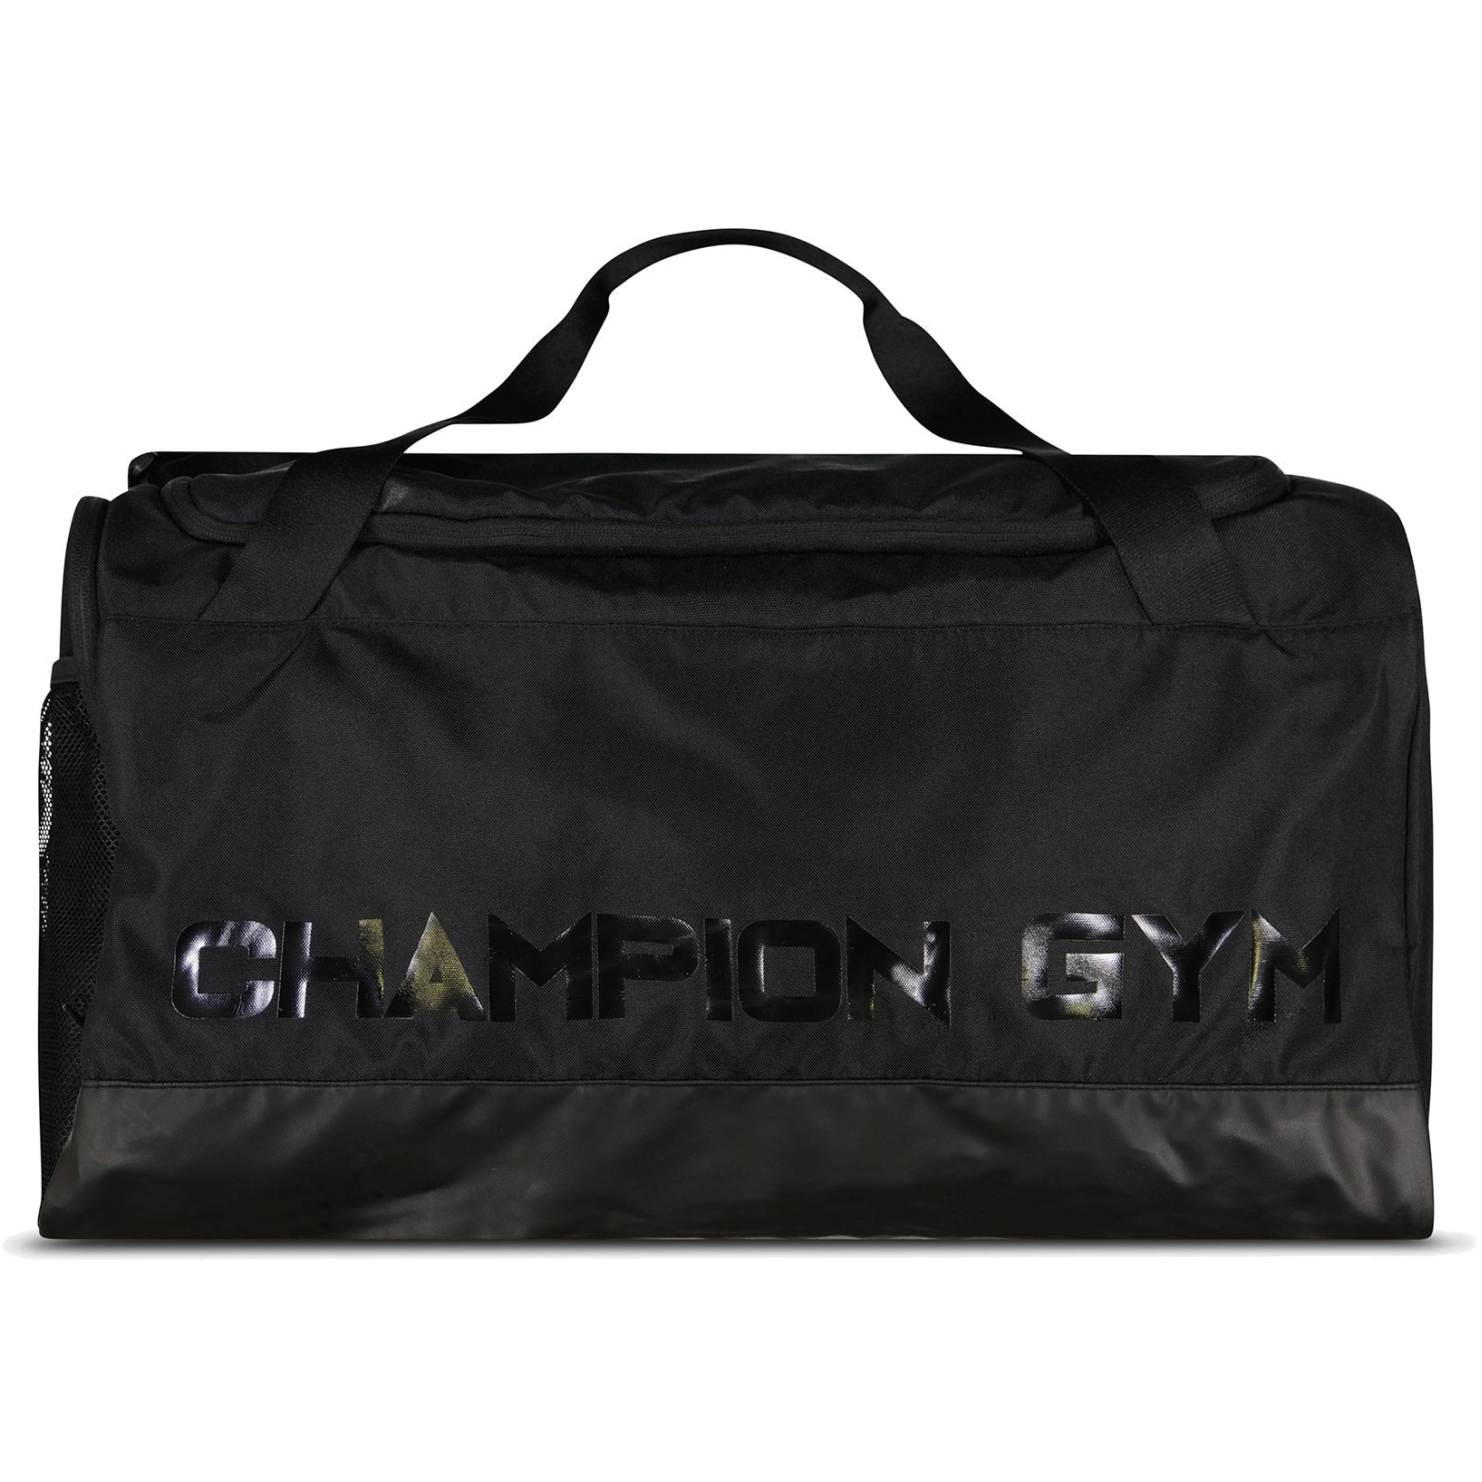 Produktbild von Champion Legacy Medium Reisetasche 805604 - schwarz